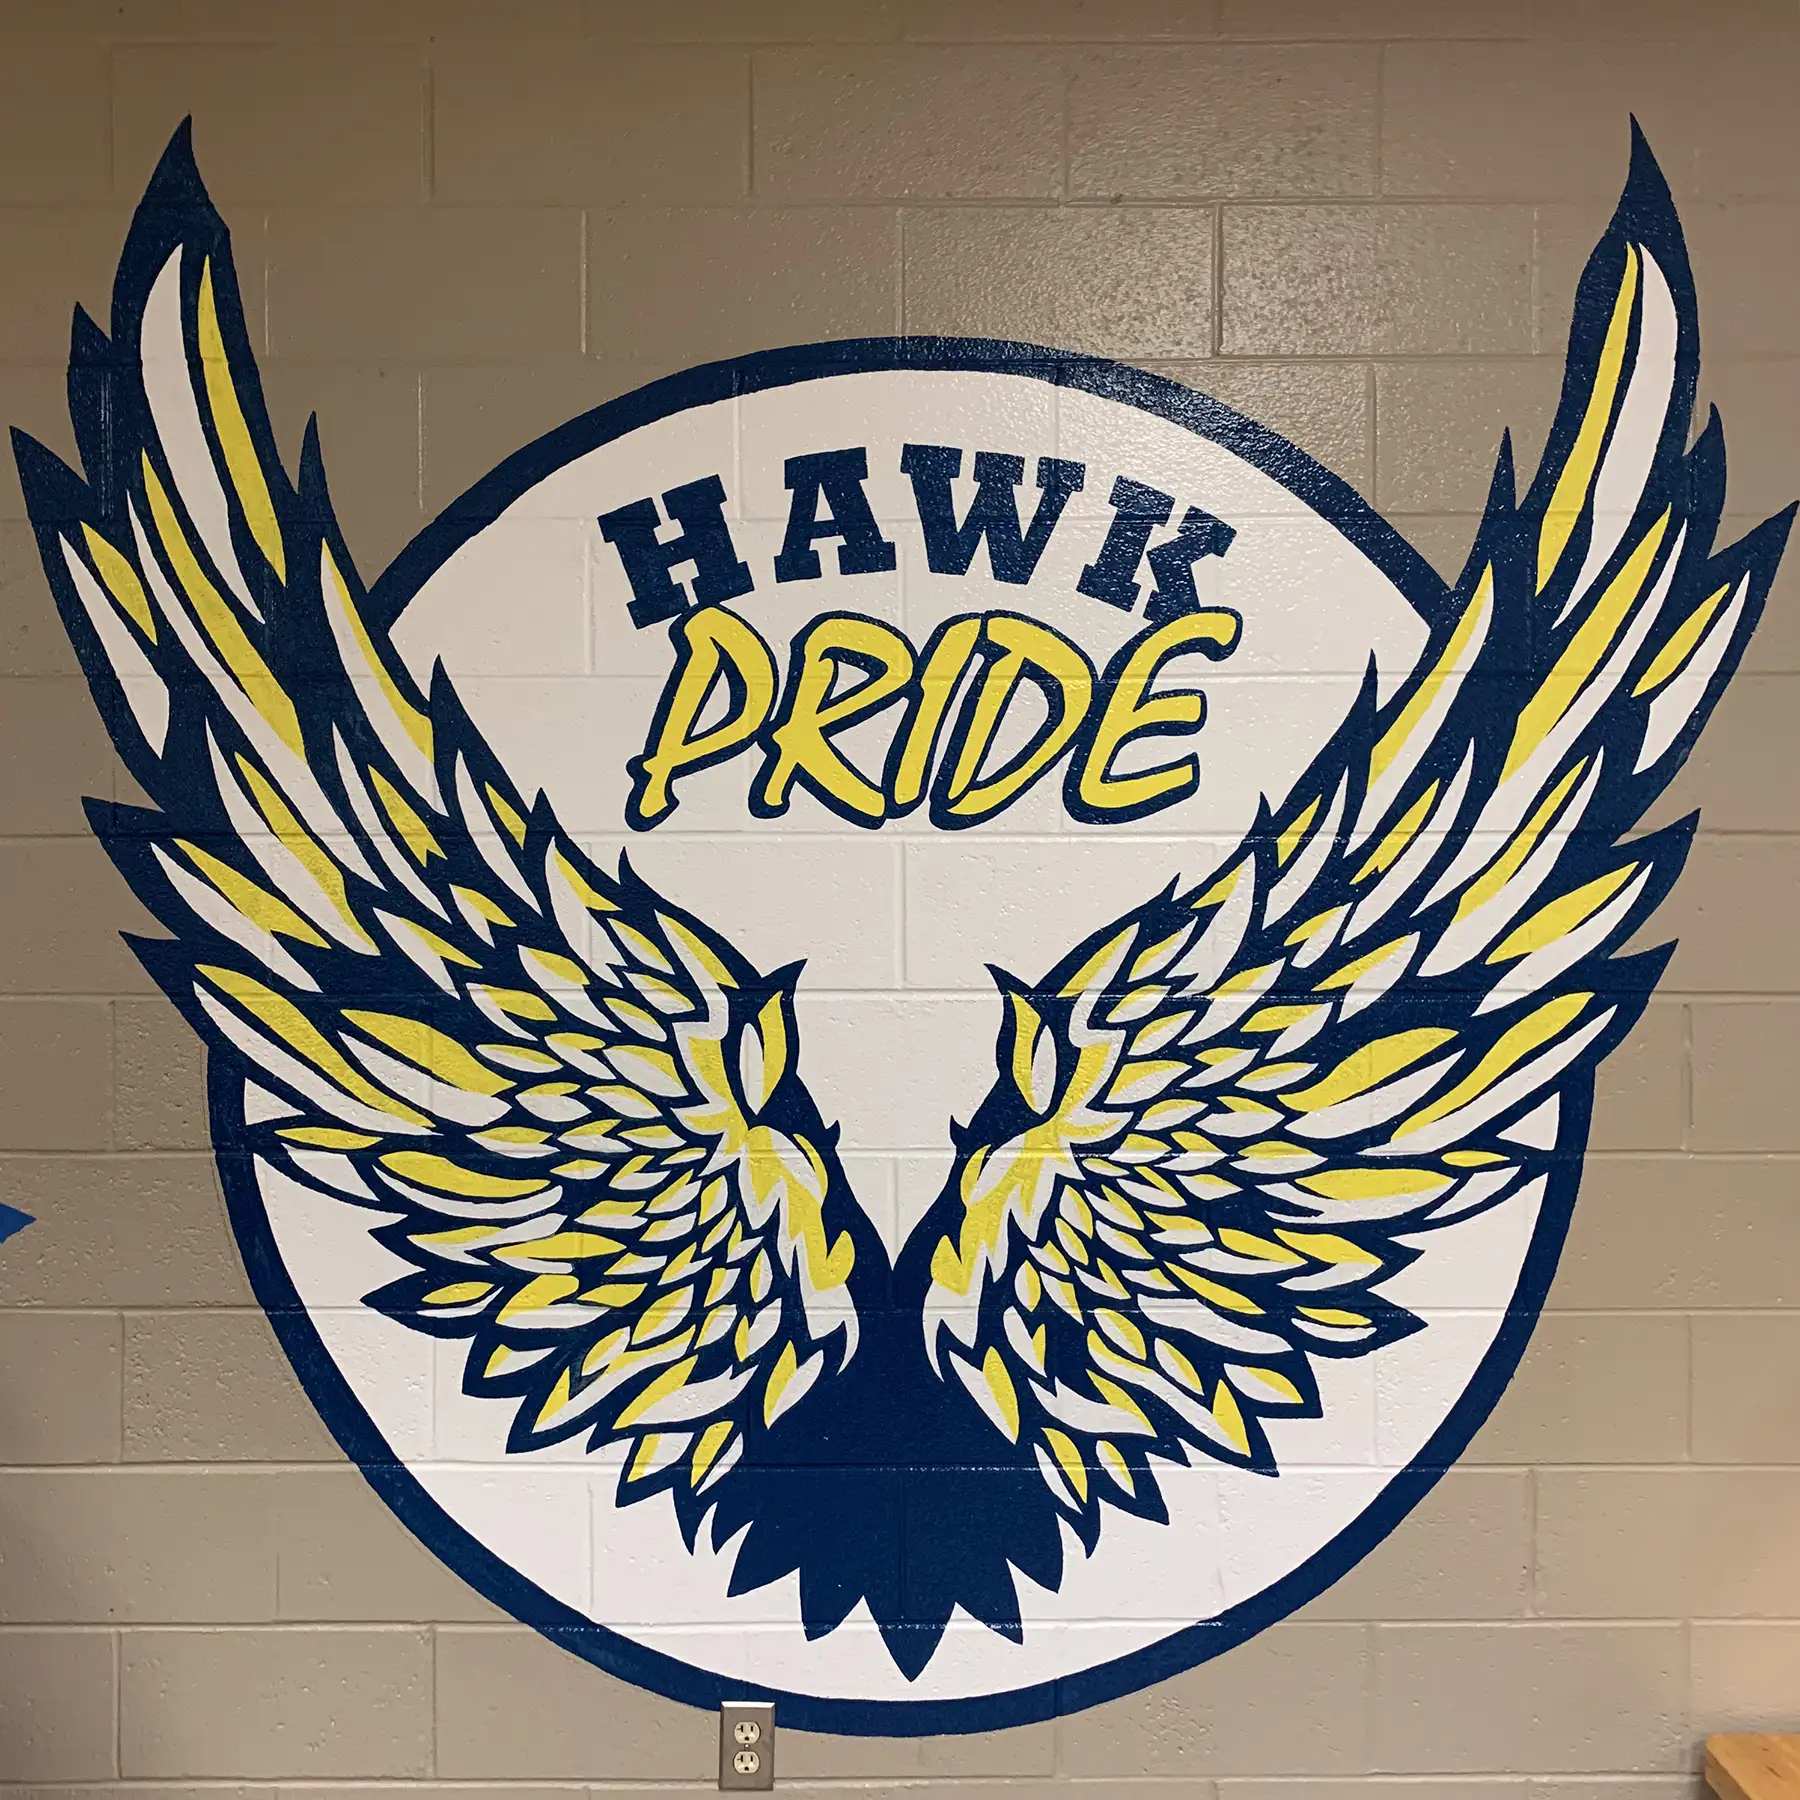 Hawk Pride mural